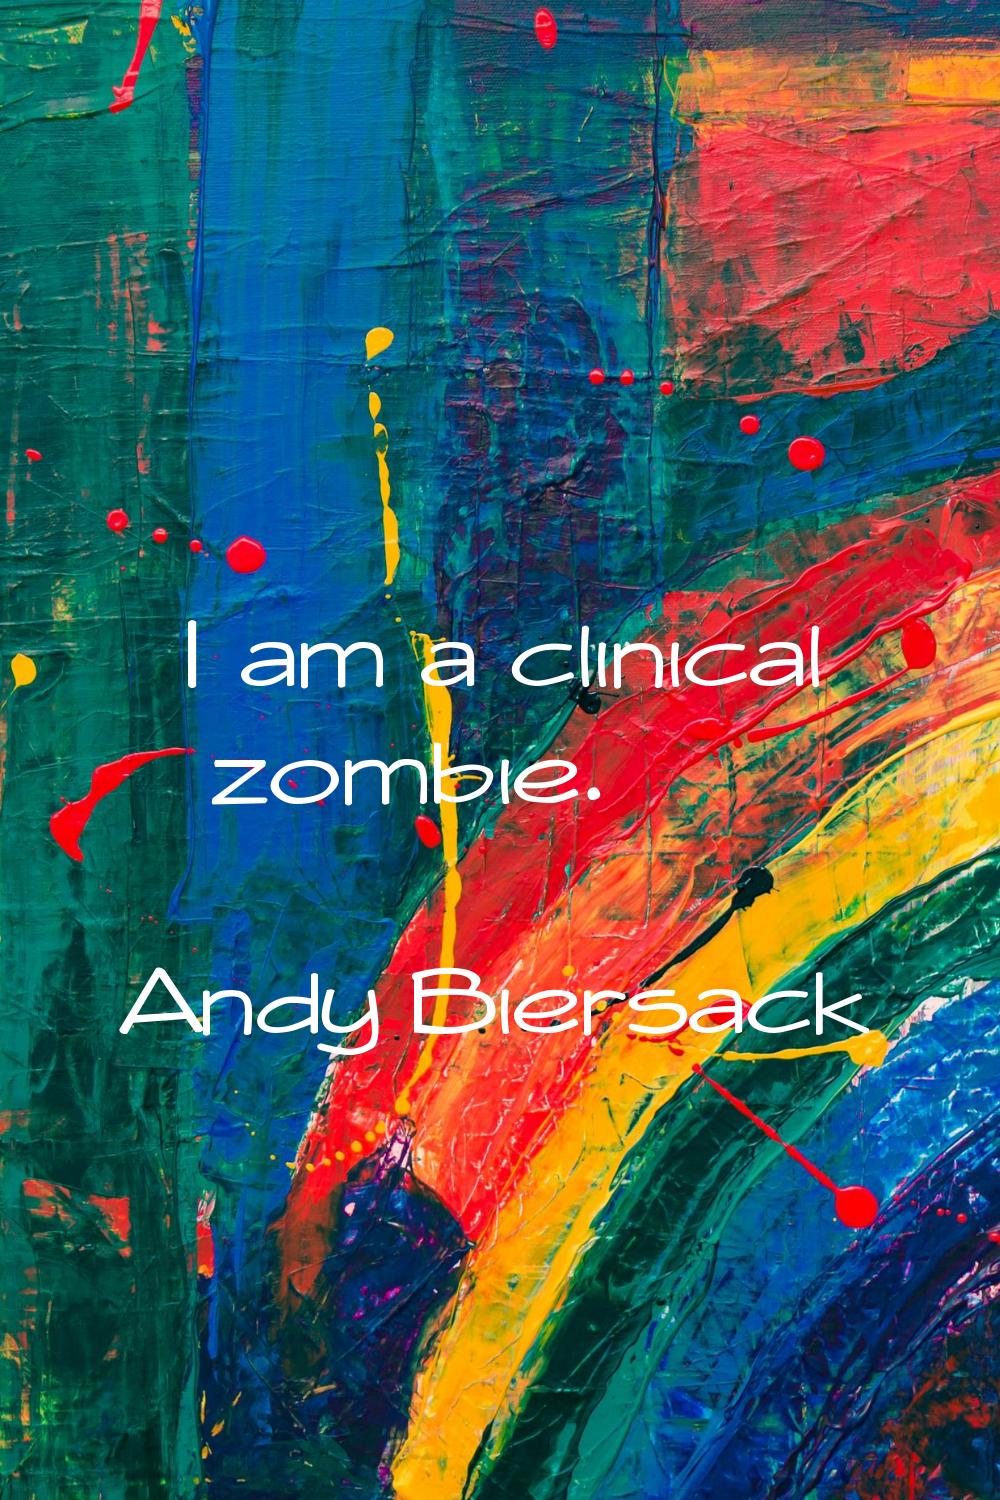 I am a clinical zombie.